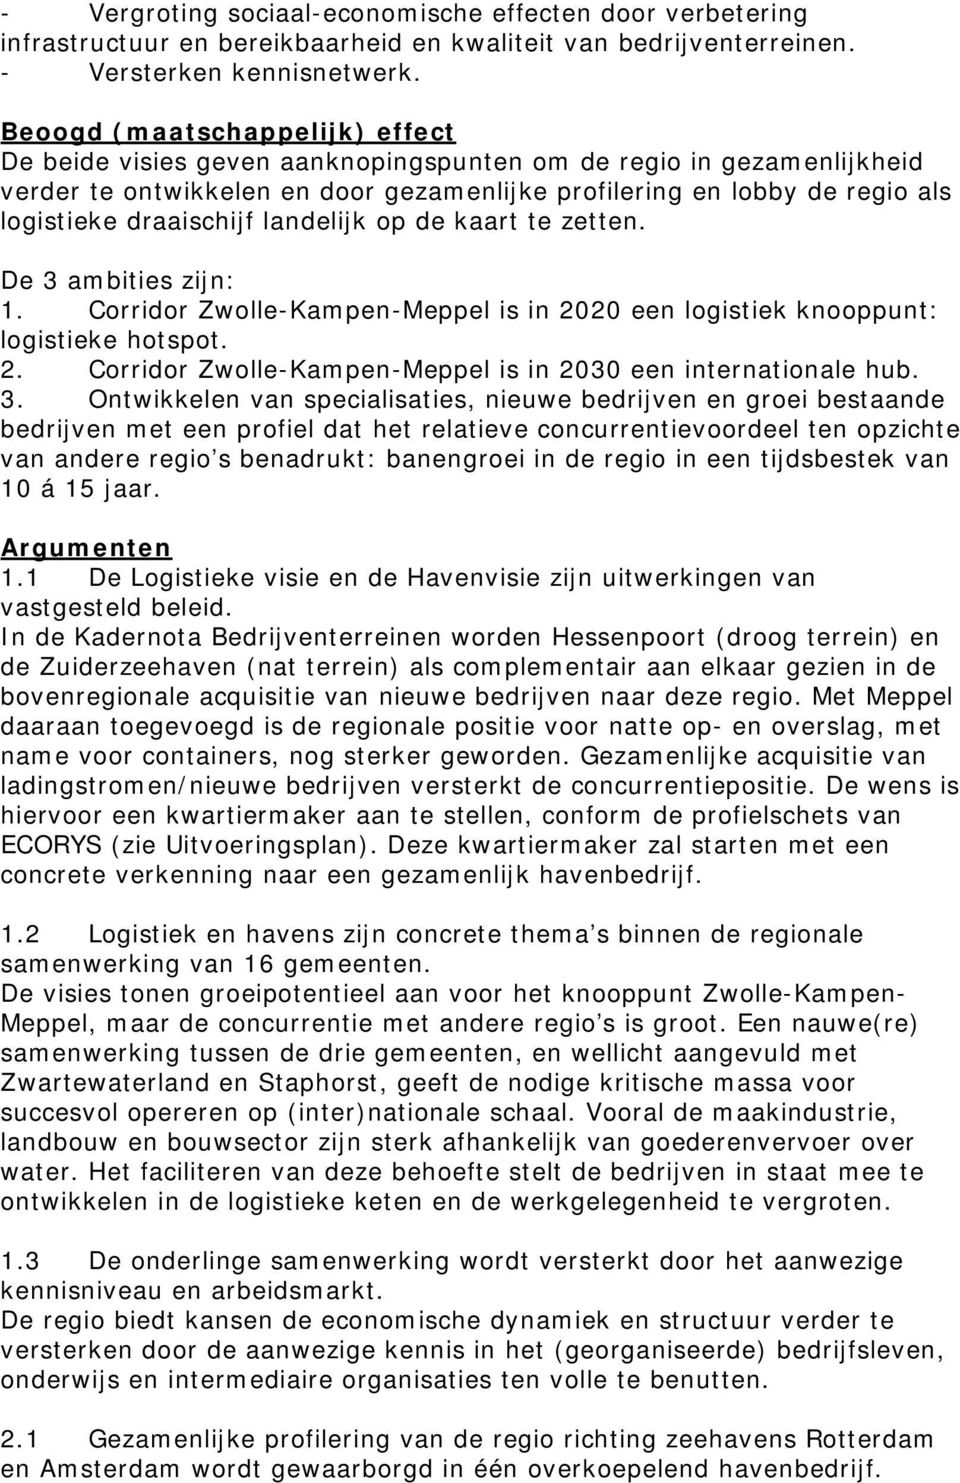 draaischijf landelijk op de kaart te zetten. De 3 ambities zijn: 1. Corridor Zwolle-Kampen-Meppel is in 2020 een logistiek knooppunt: logistieke hotspot. 2. Corridor Zwolle-Kampen-Meppel is in 2030 een internationale hub.